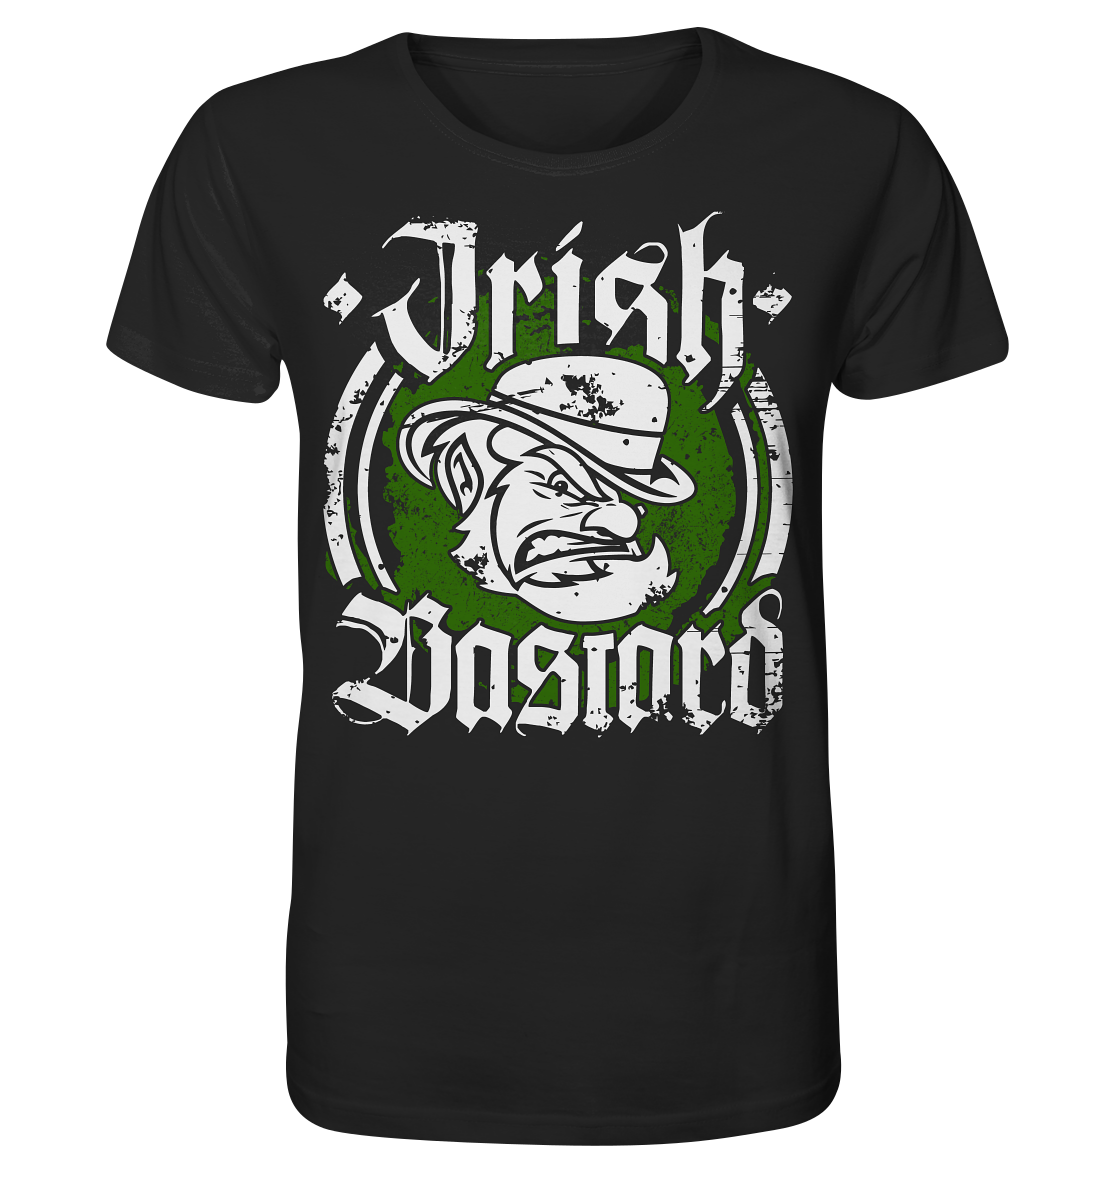 Irish Bastard - Organic Shirt